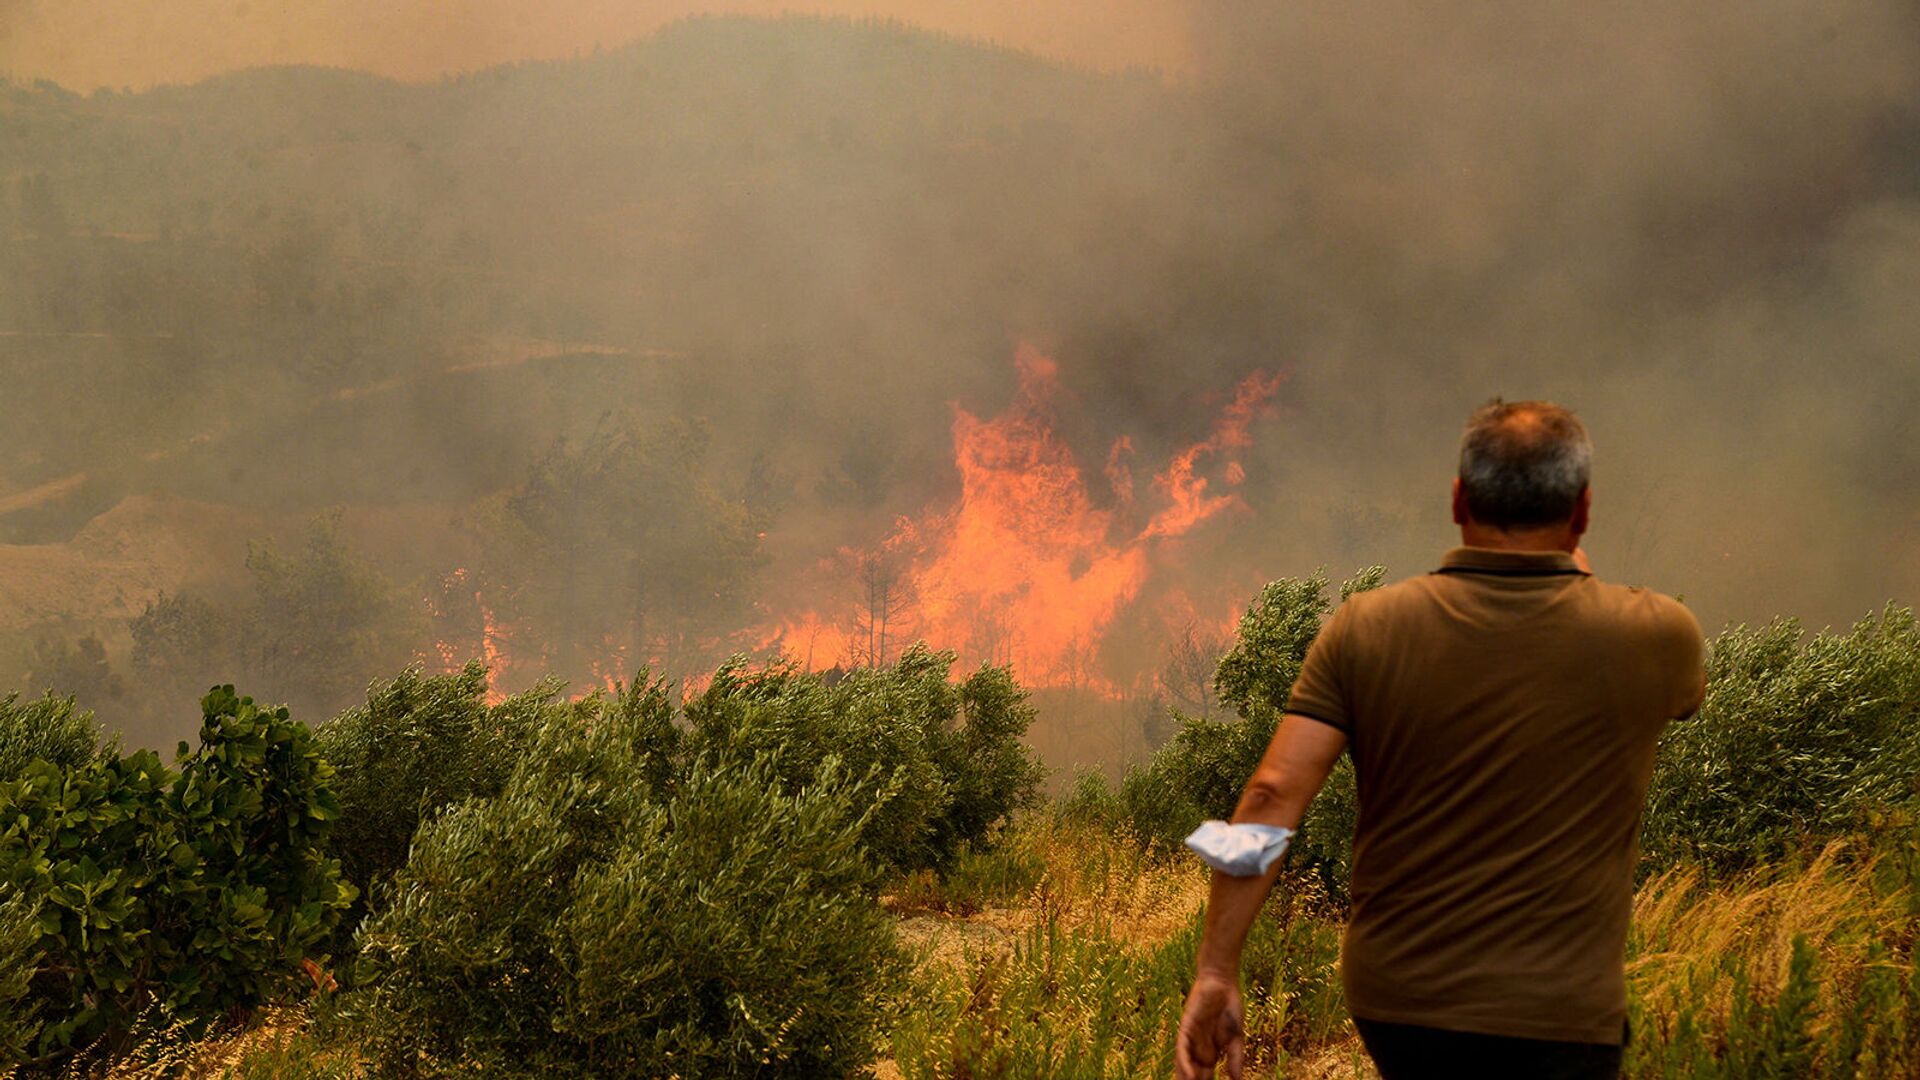 Мкжчина на фоне лесного пожара (29 июля 2021). Турция - Sputnik Արմենիա, 1920, 31.07.2021